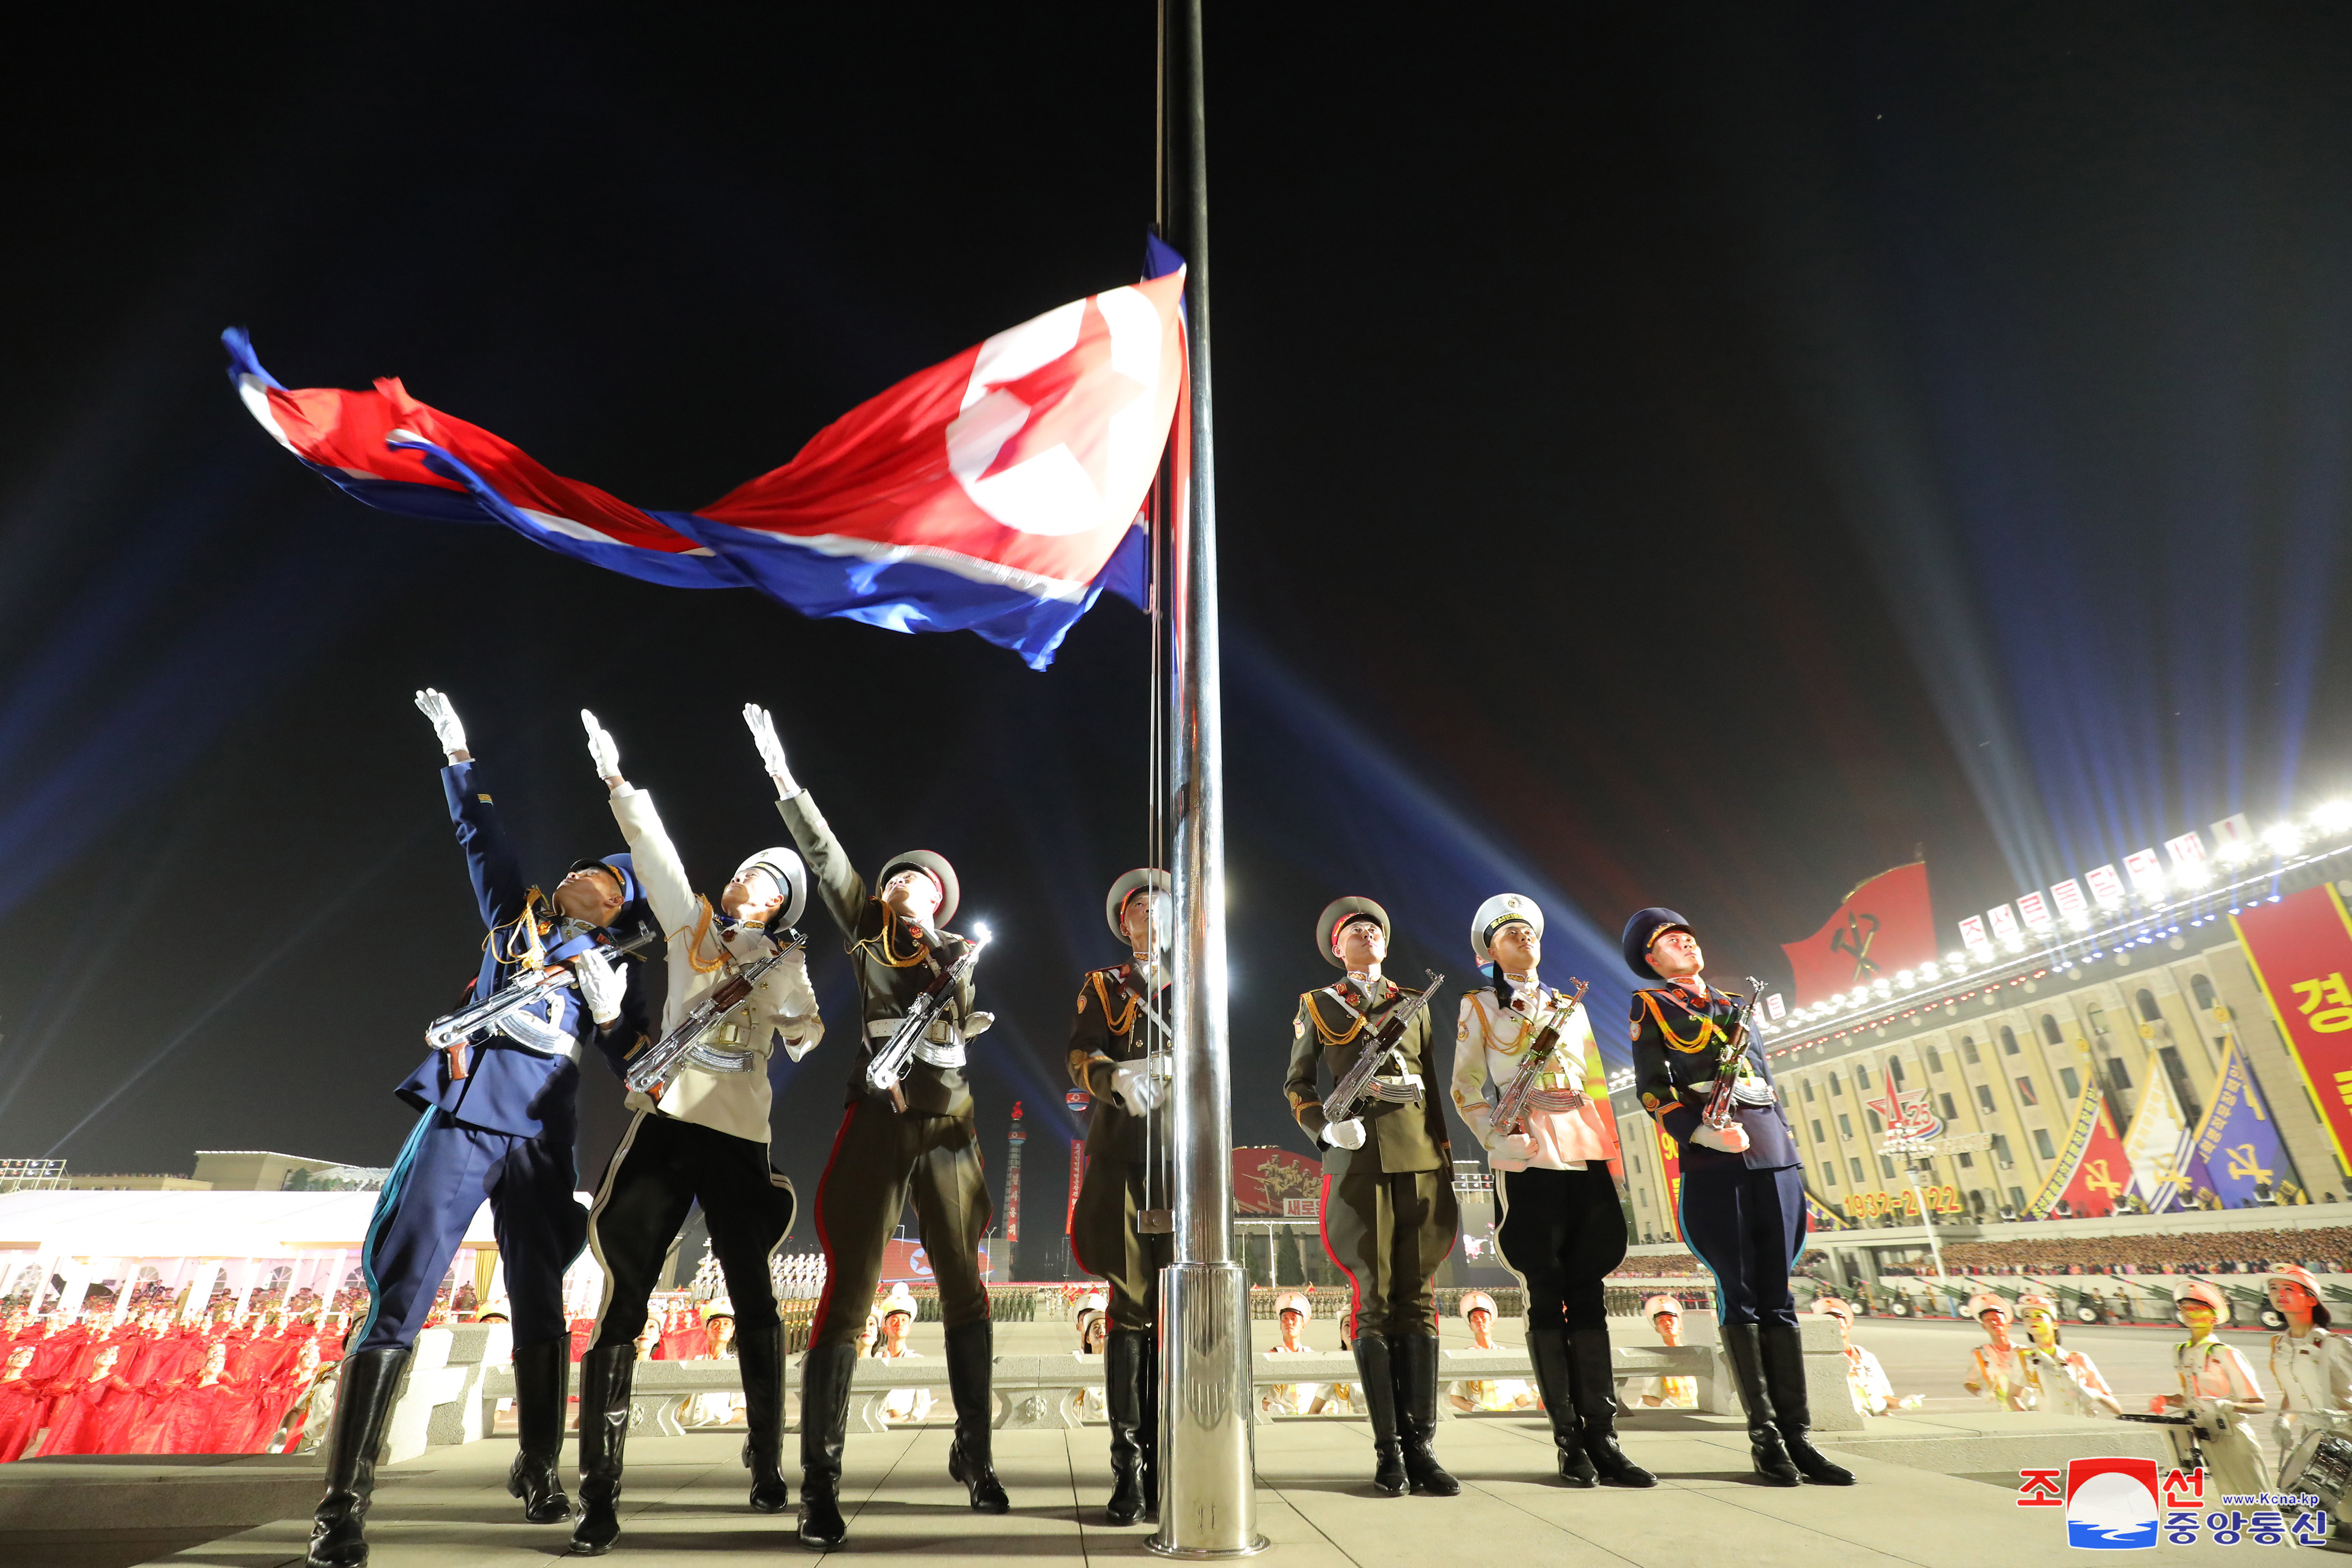 북한이 조선인민혁명군(항일유격대) 창건 90주년을 맞아 지난 25일 저녁 평양 김일성광장에서 열병식을 개최했다. (사진출처 : 연합뉴스)